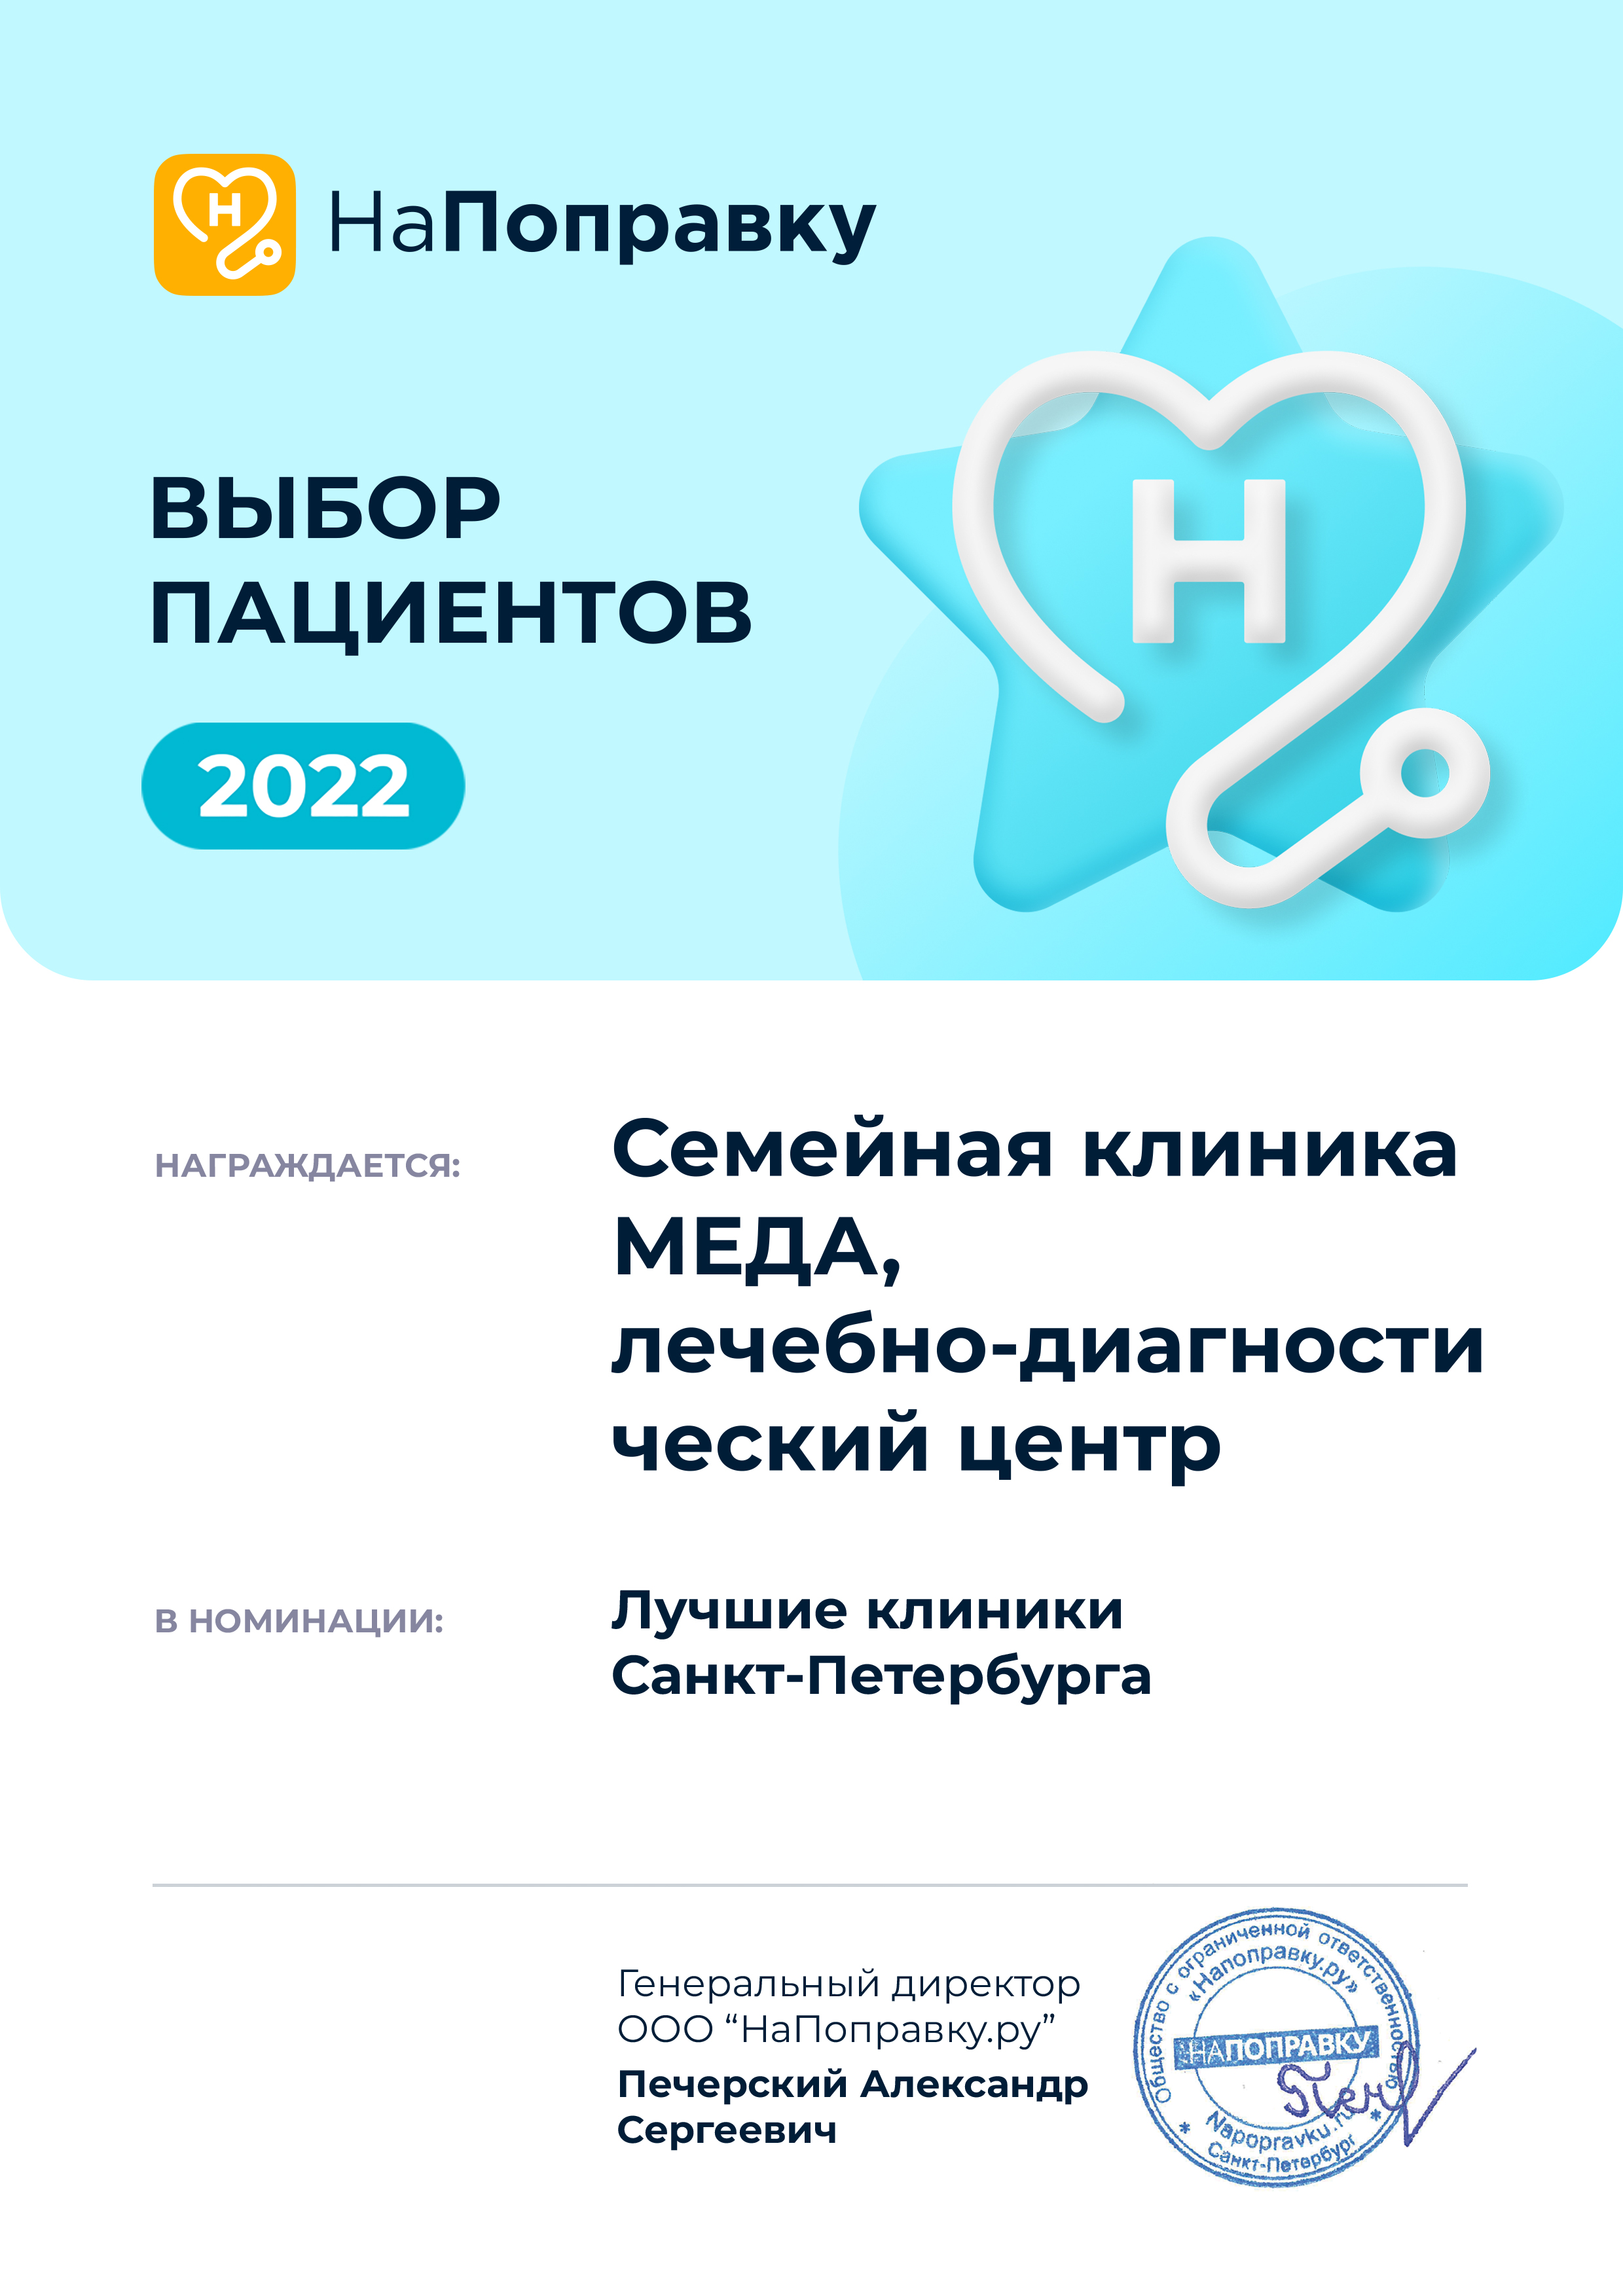 Клиника МЕДА - победитель рейтинга "Выбор пациентов" 2022